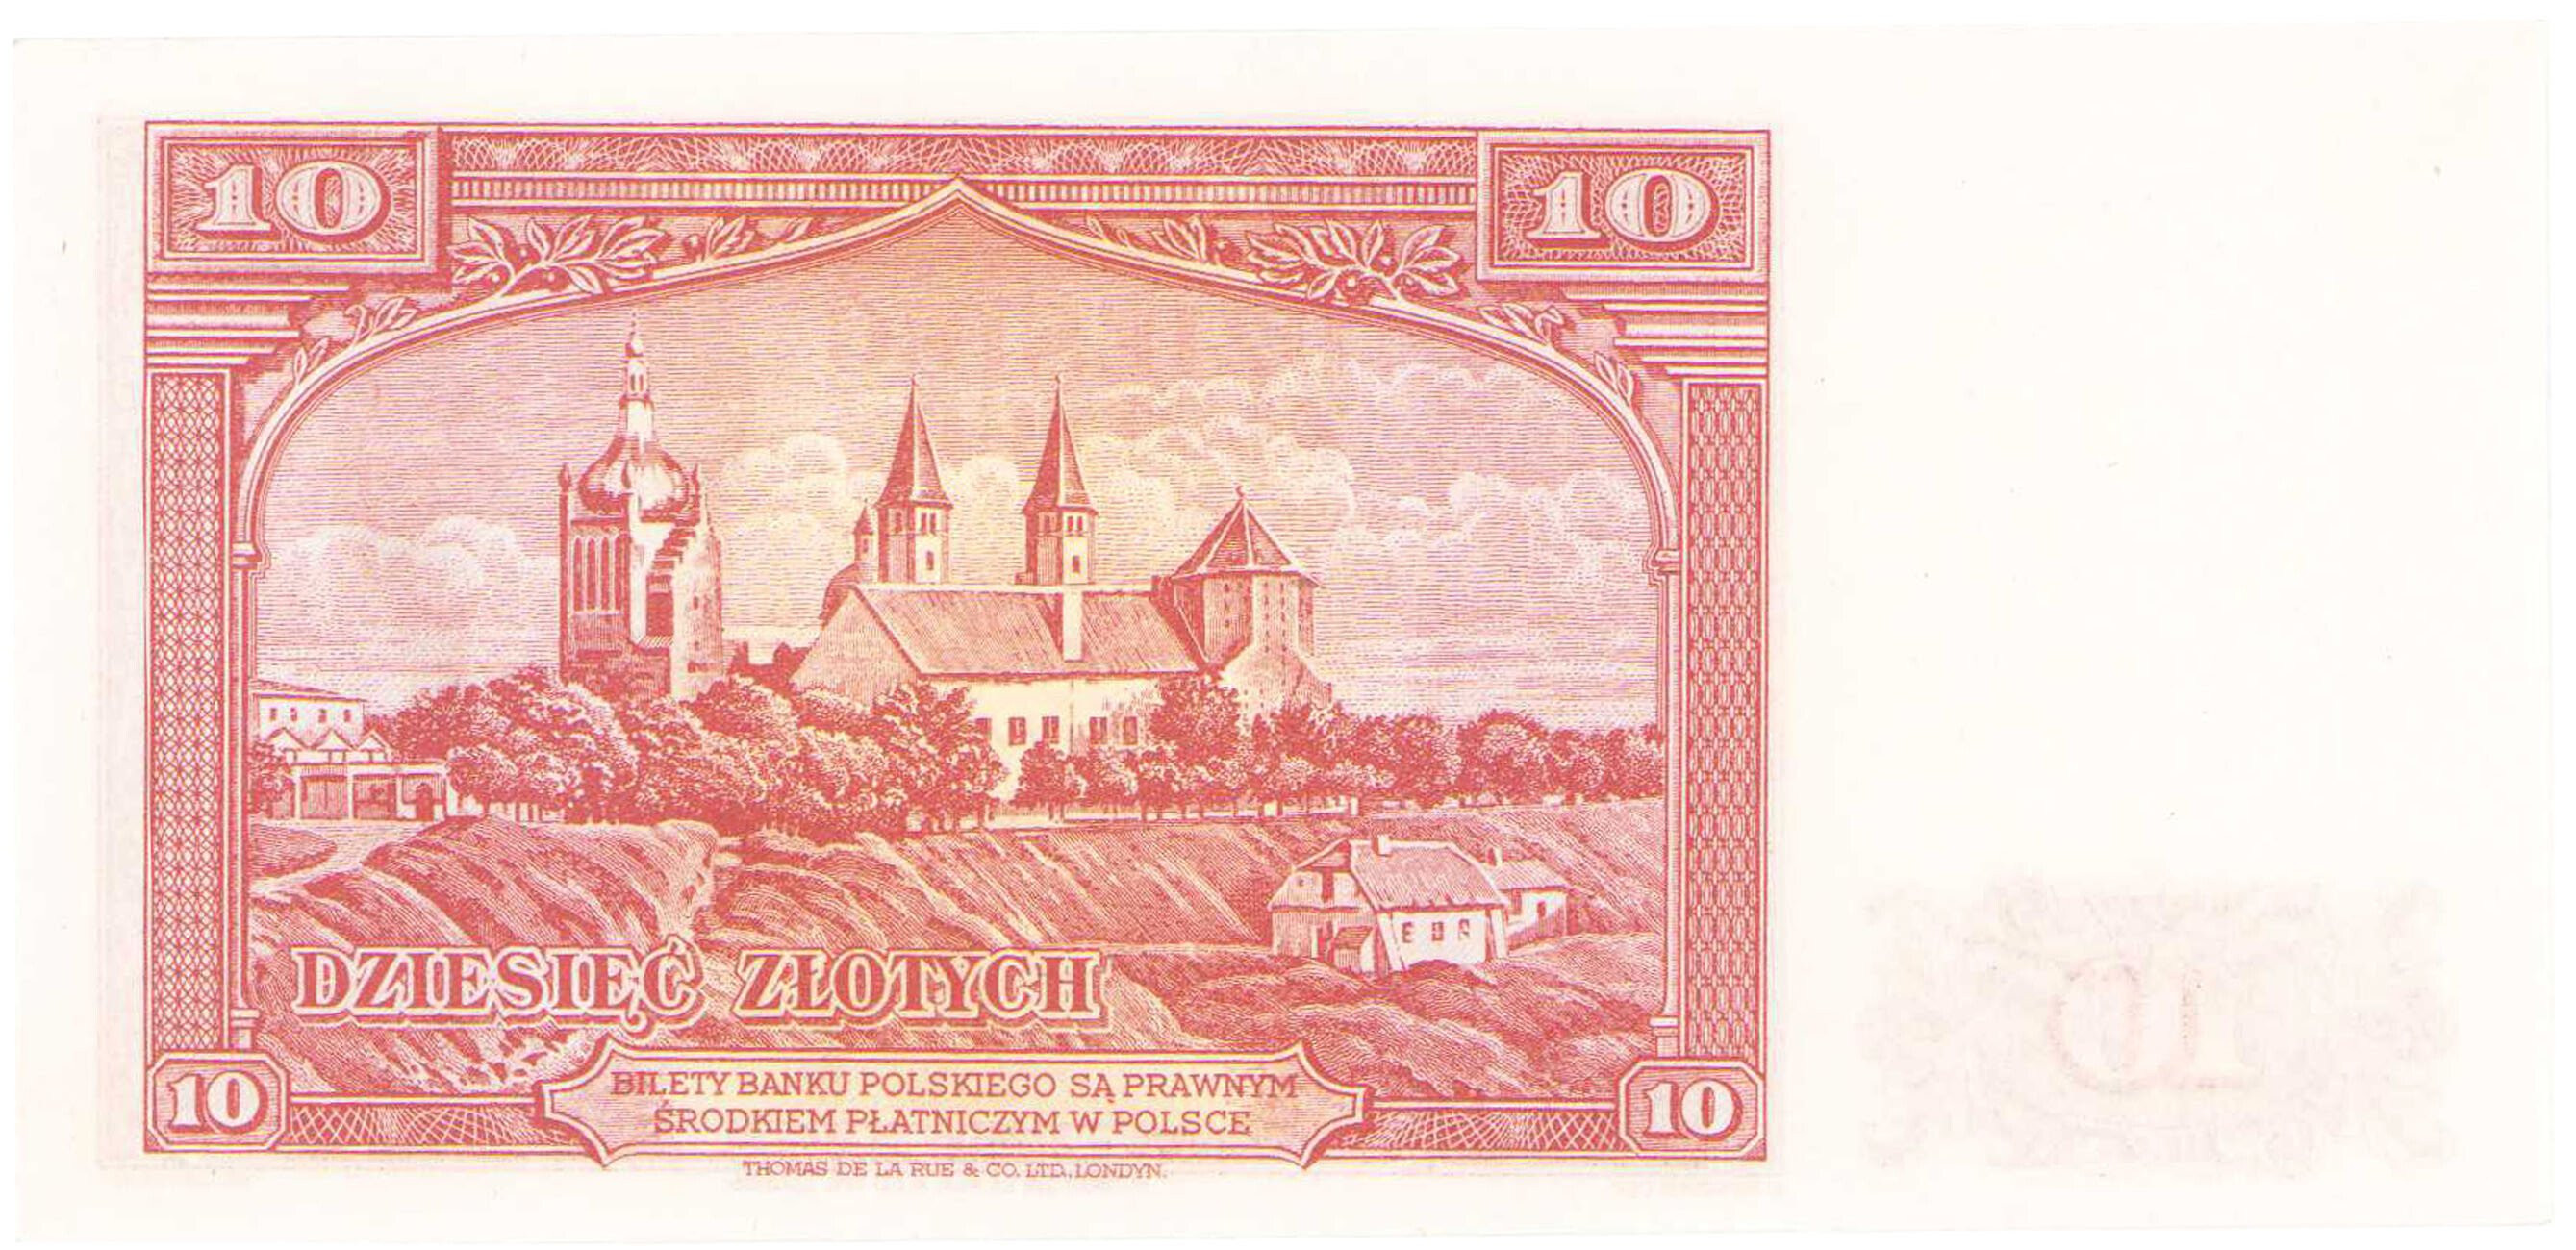 Emigracja 10 złotych 1939 seria E - RZADKOŚĆ R6